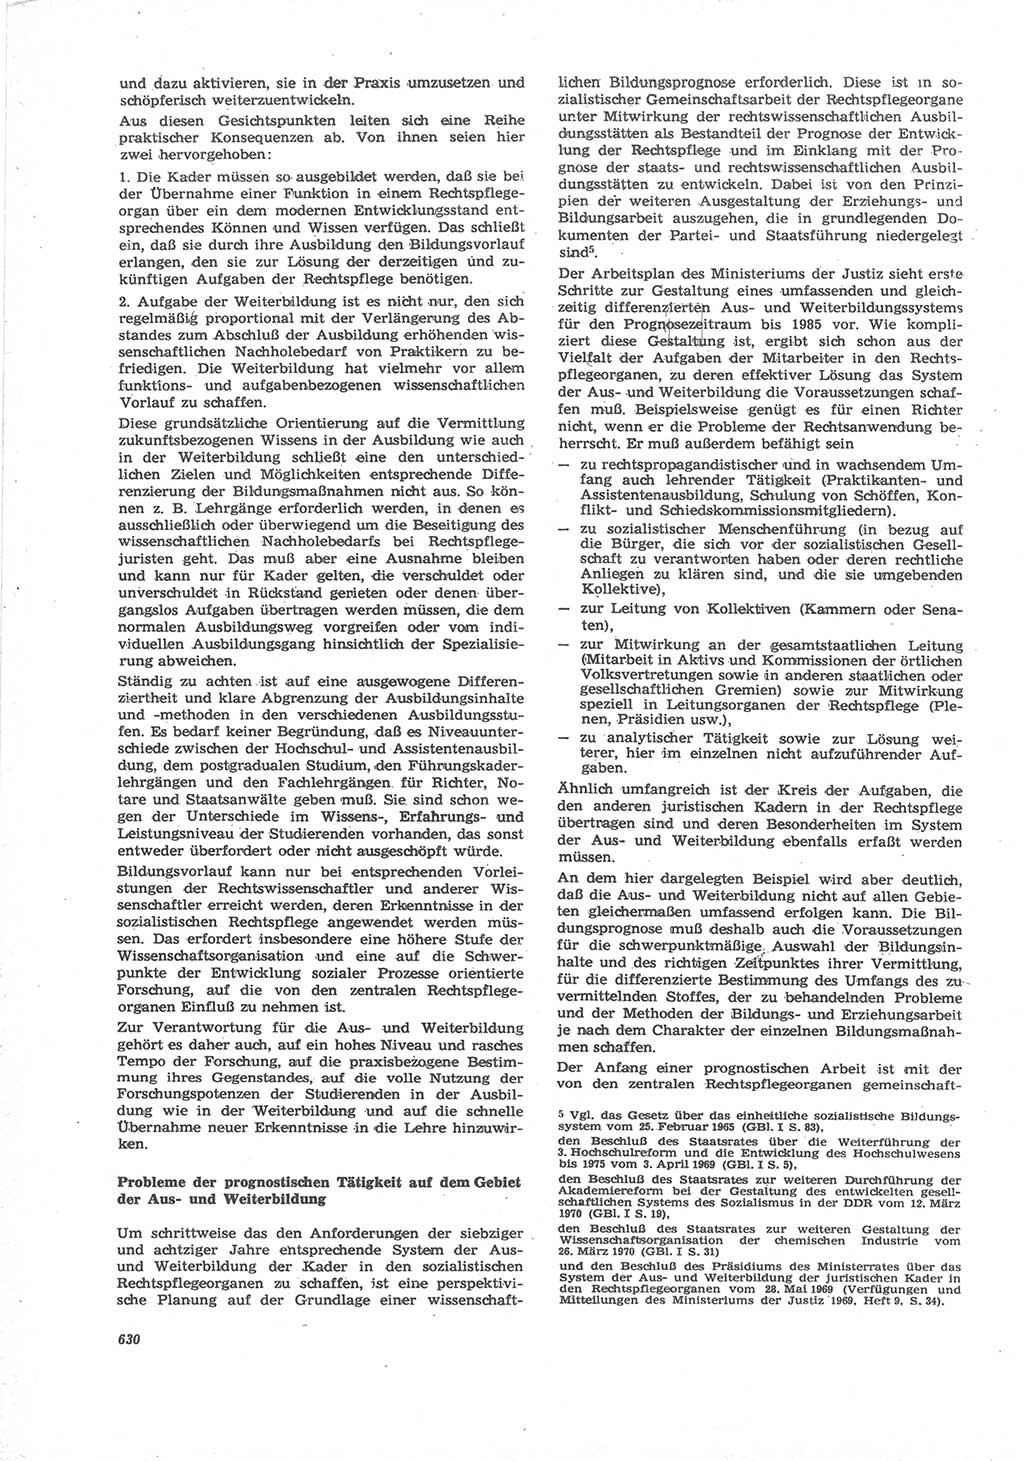 Neue Justiz (NJ), Zeitschrift für Recht und Rechtswissenschaft [Deutsche Demokratische Republik (DDR)], 24. Jahrgang 1970, Seite 630 (NJ DDR 1970, S. 630)